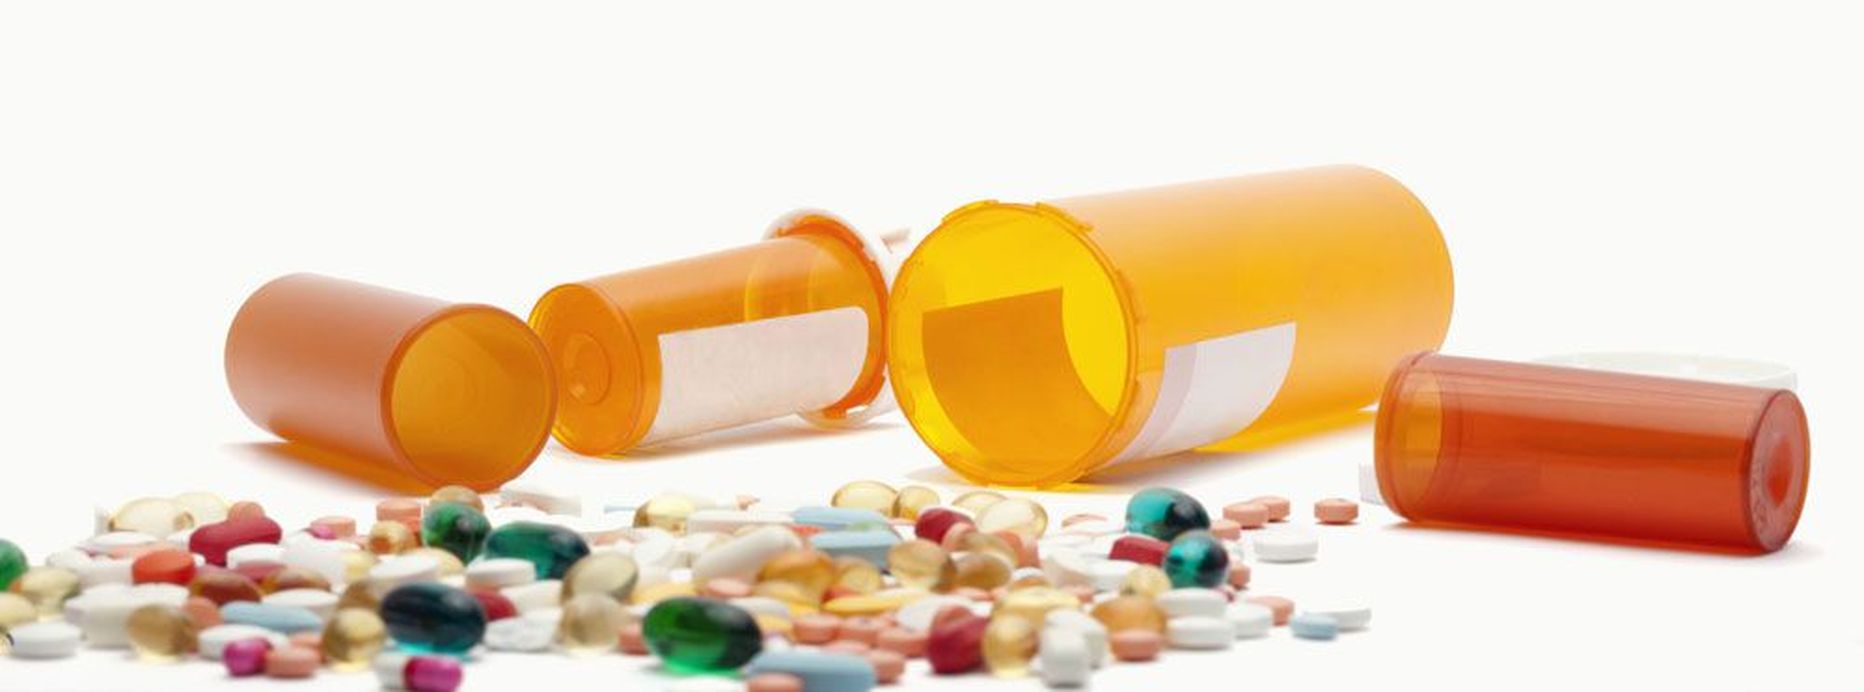 Eestlastest on saanud tabletirahvas, retseptiravimitest ostetakse kõige enam südamerohtusid.